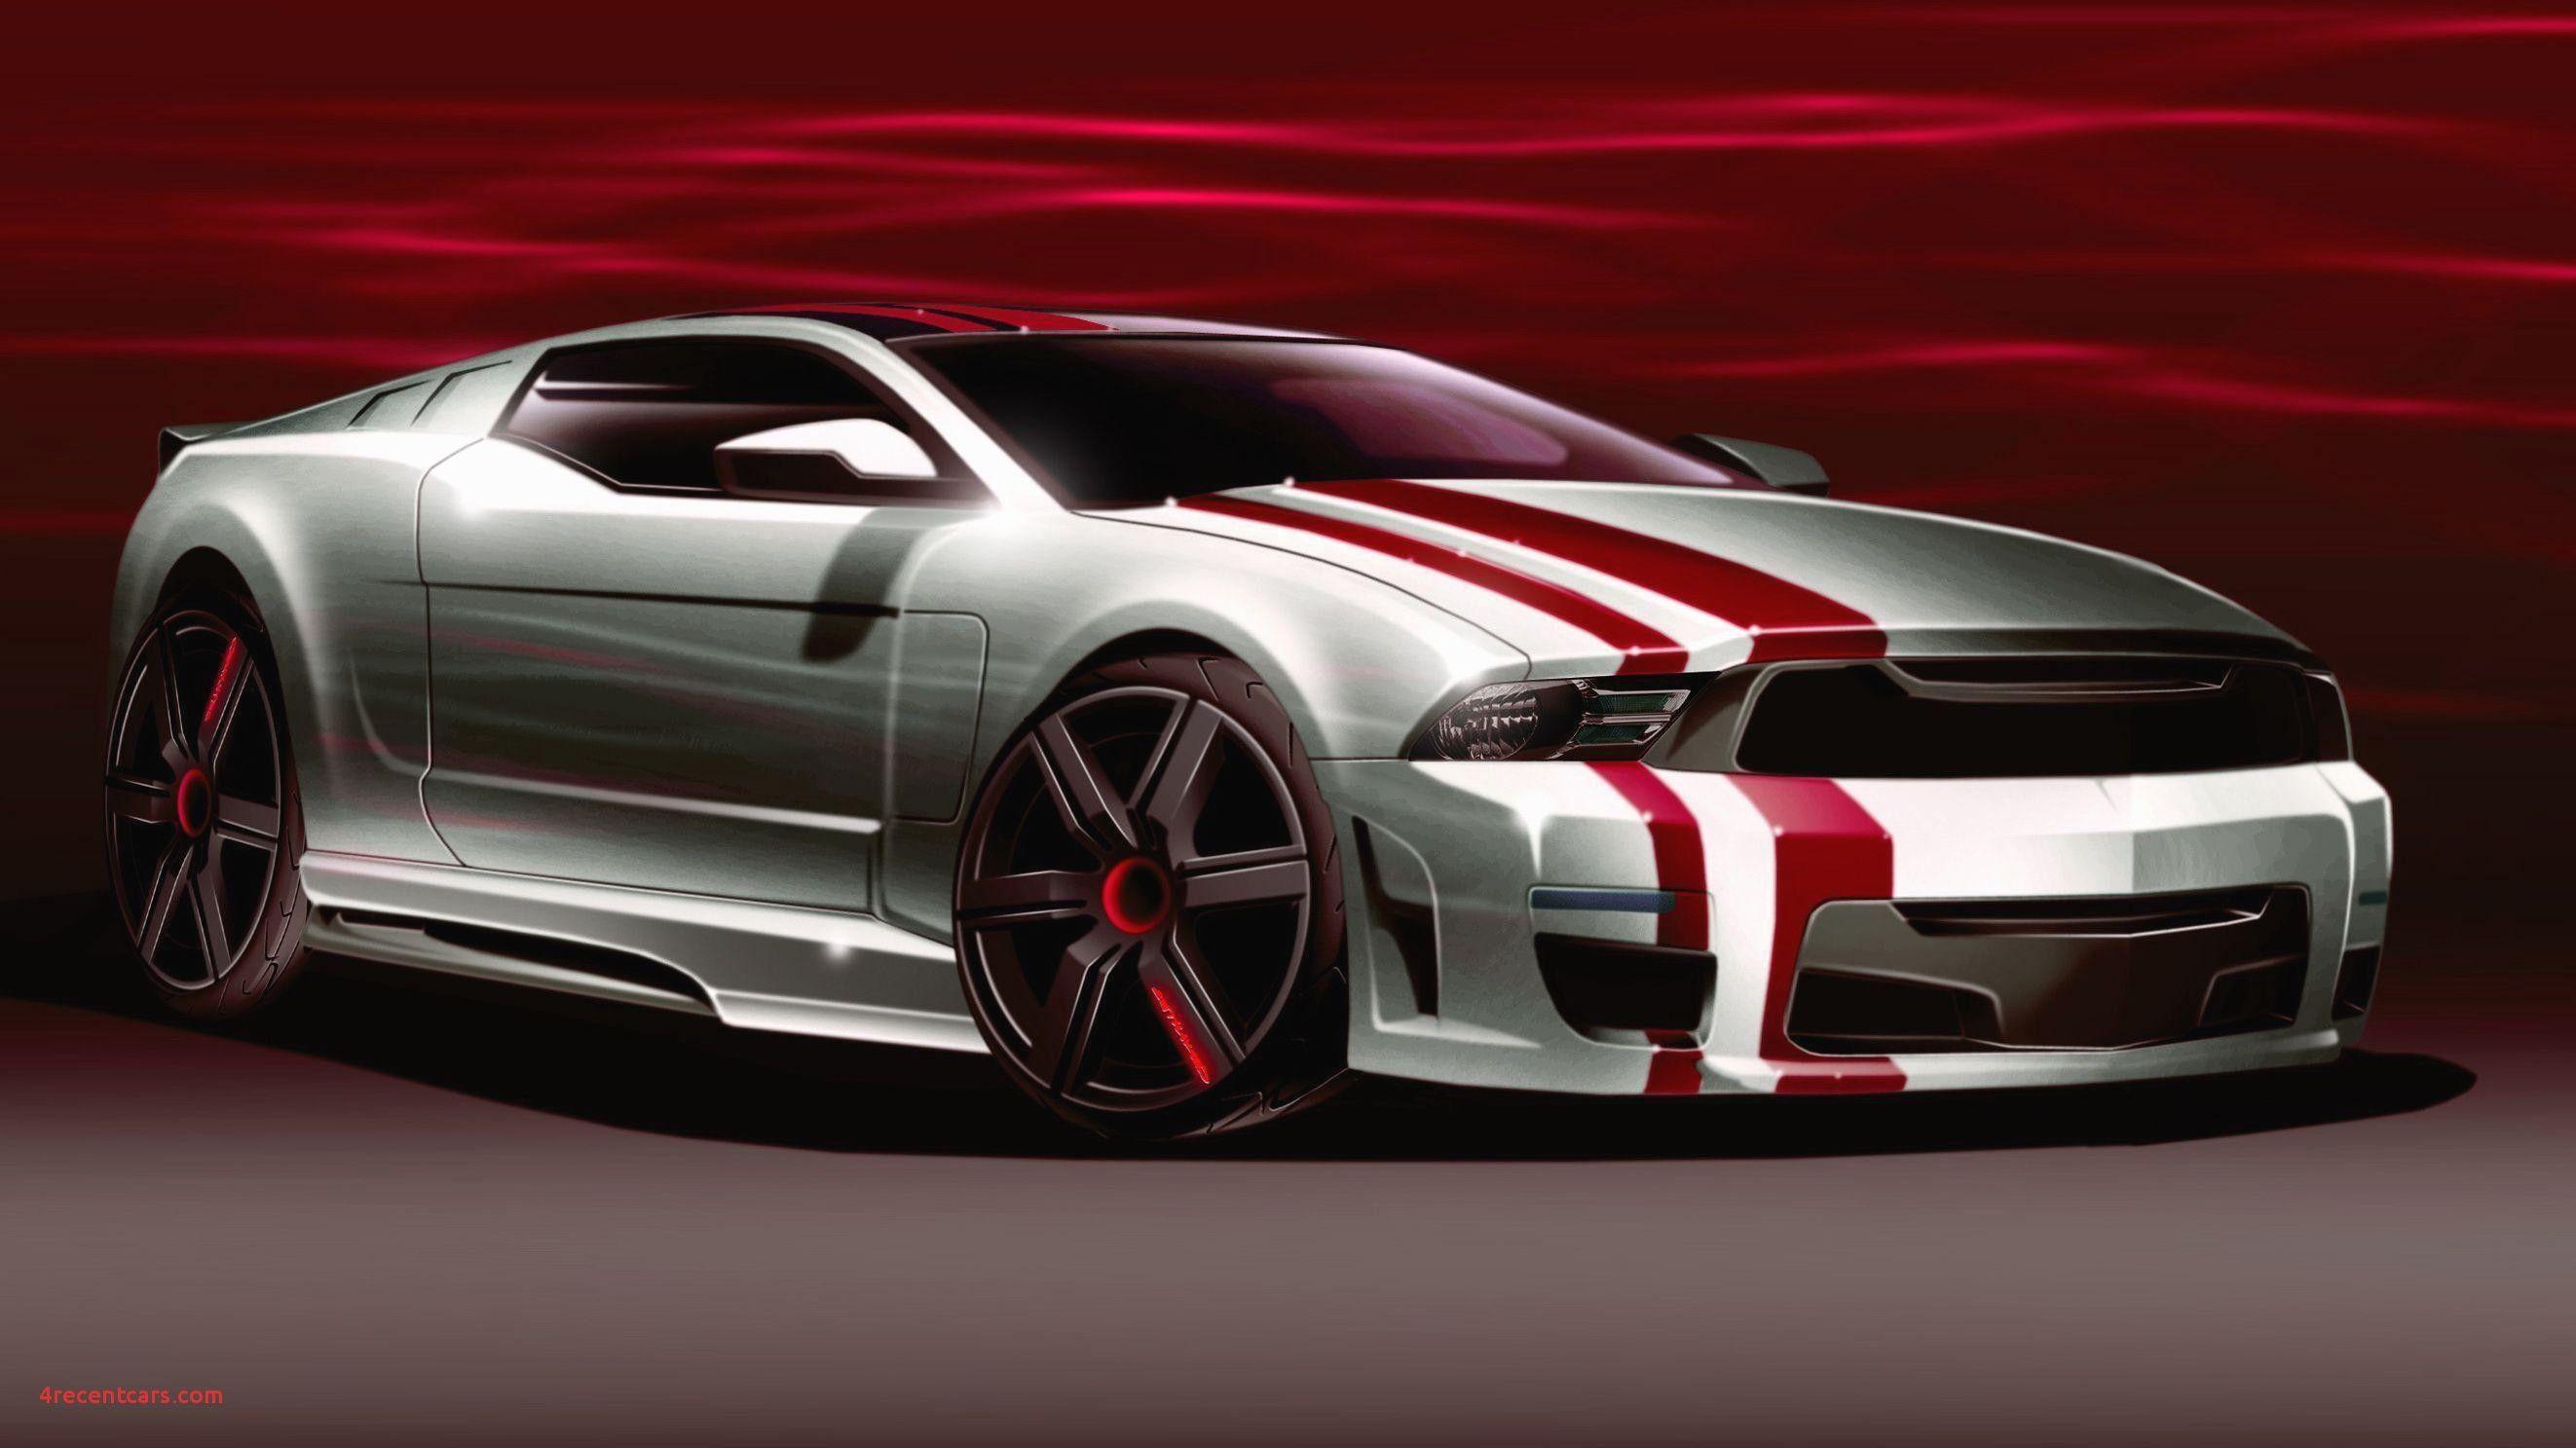 Inspirational Super Cars Wallpaper 3D. Recent Cars Wallpaper HD